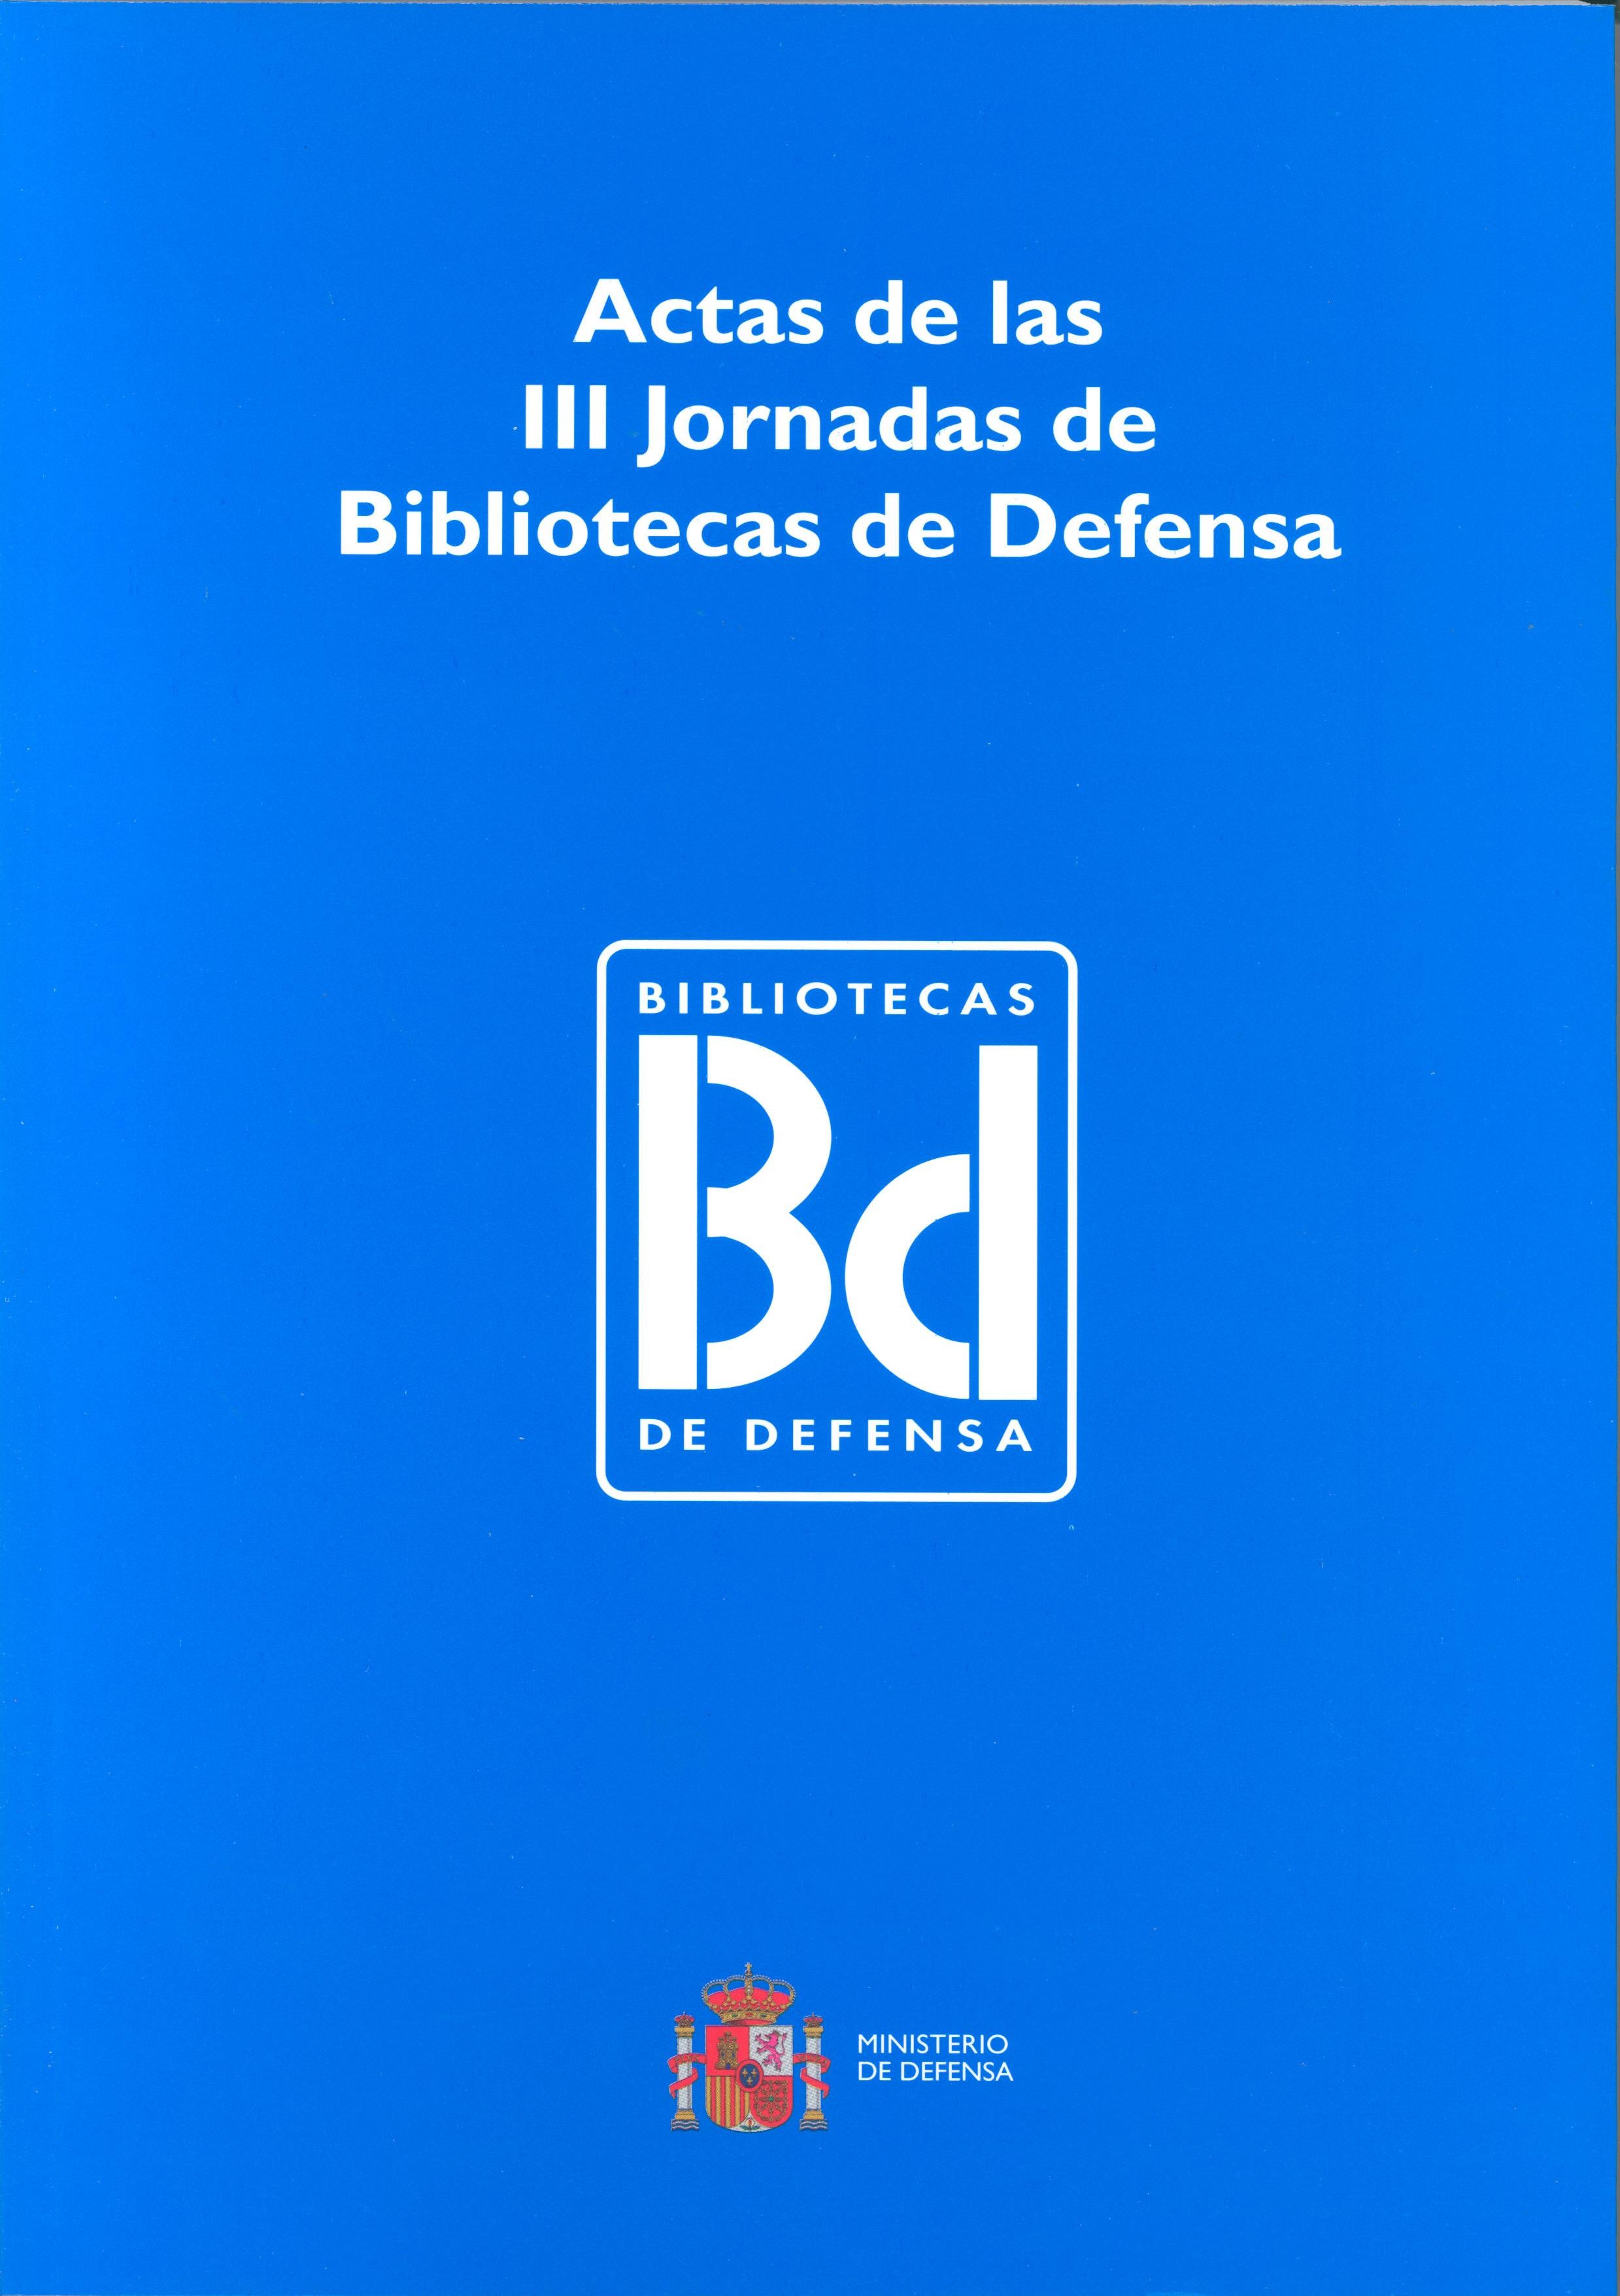 ACTAS DE LAS III JORNADAS DE BIBLIOTECAS DE DEFENSA